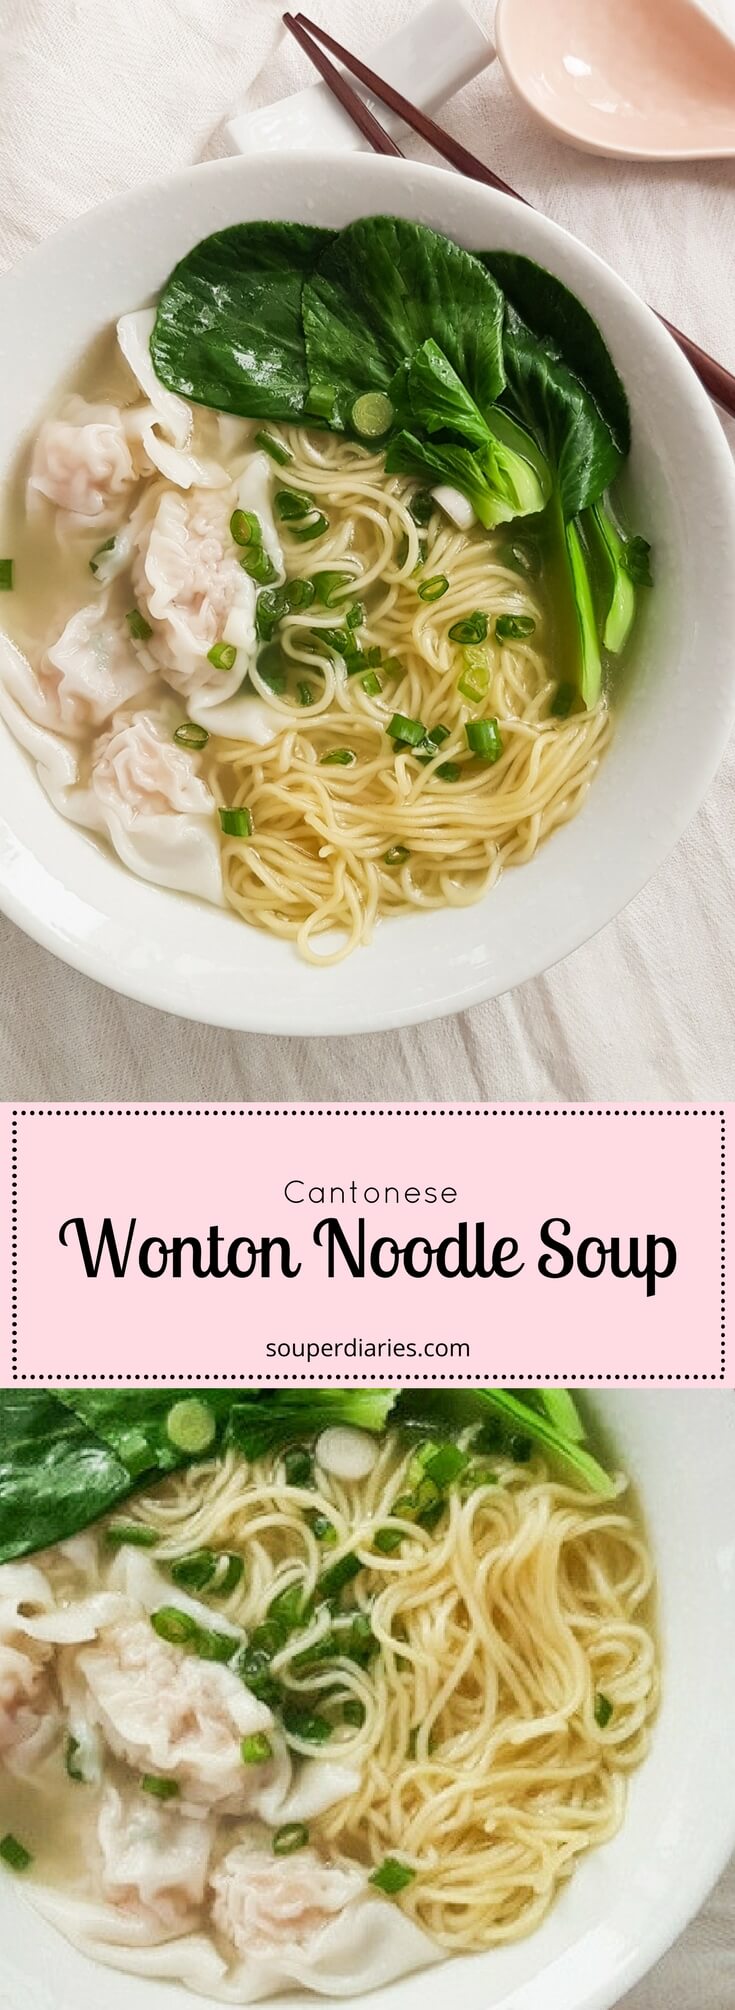 Cantonese Wonton Noodle Soup Recipe - Souper Diaries